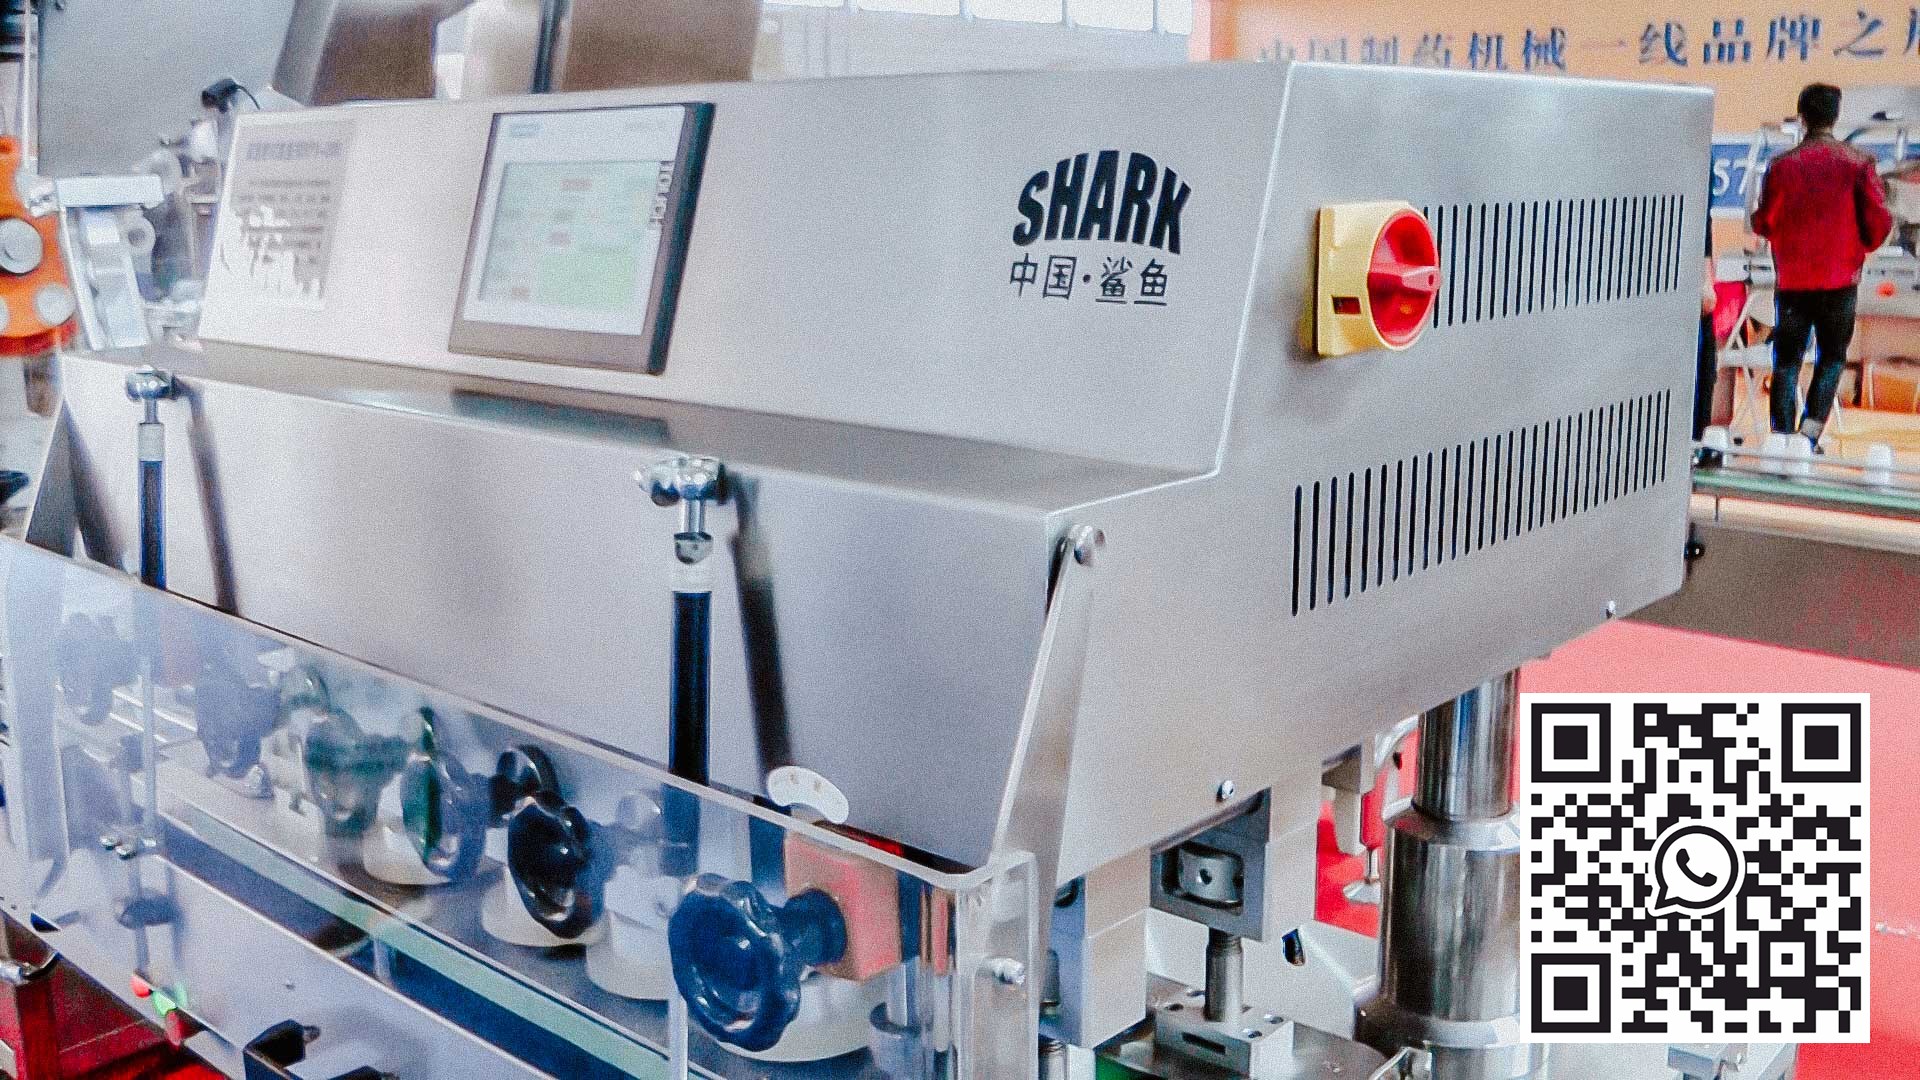 ماكينة تعبئة وتعبئة اوتوماتيكية في عبوات بلاستيكية كبسولات جيلاتينية صلبة امريكية